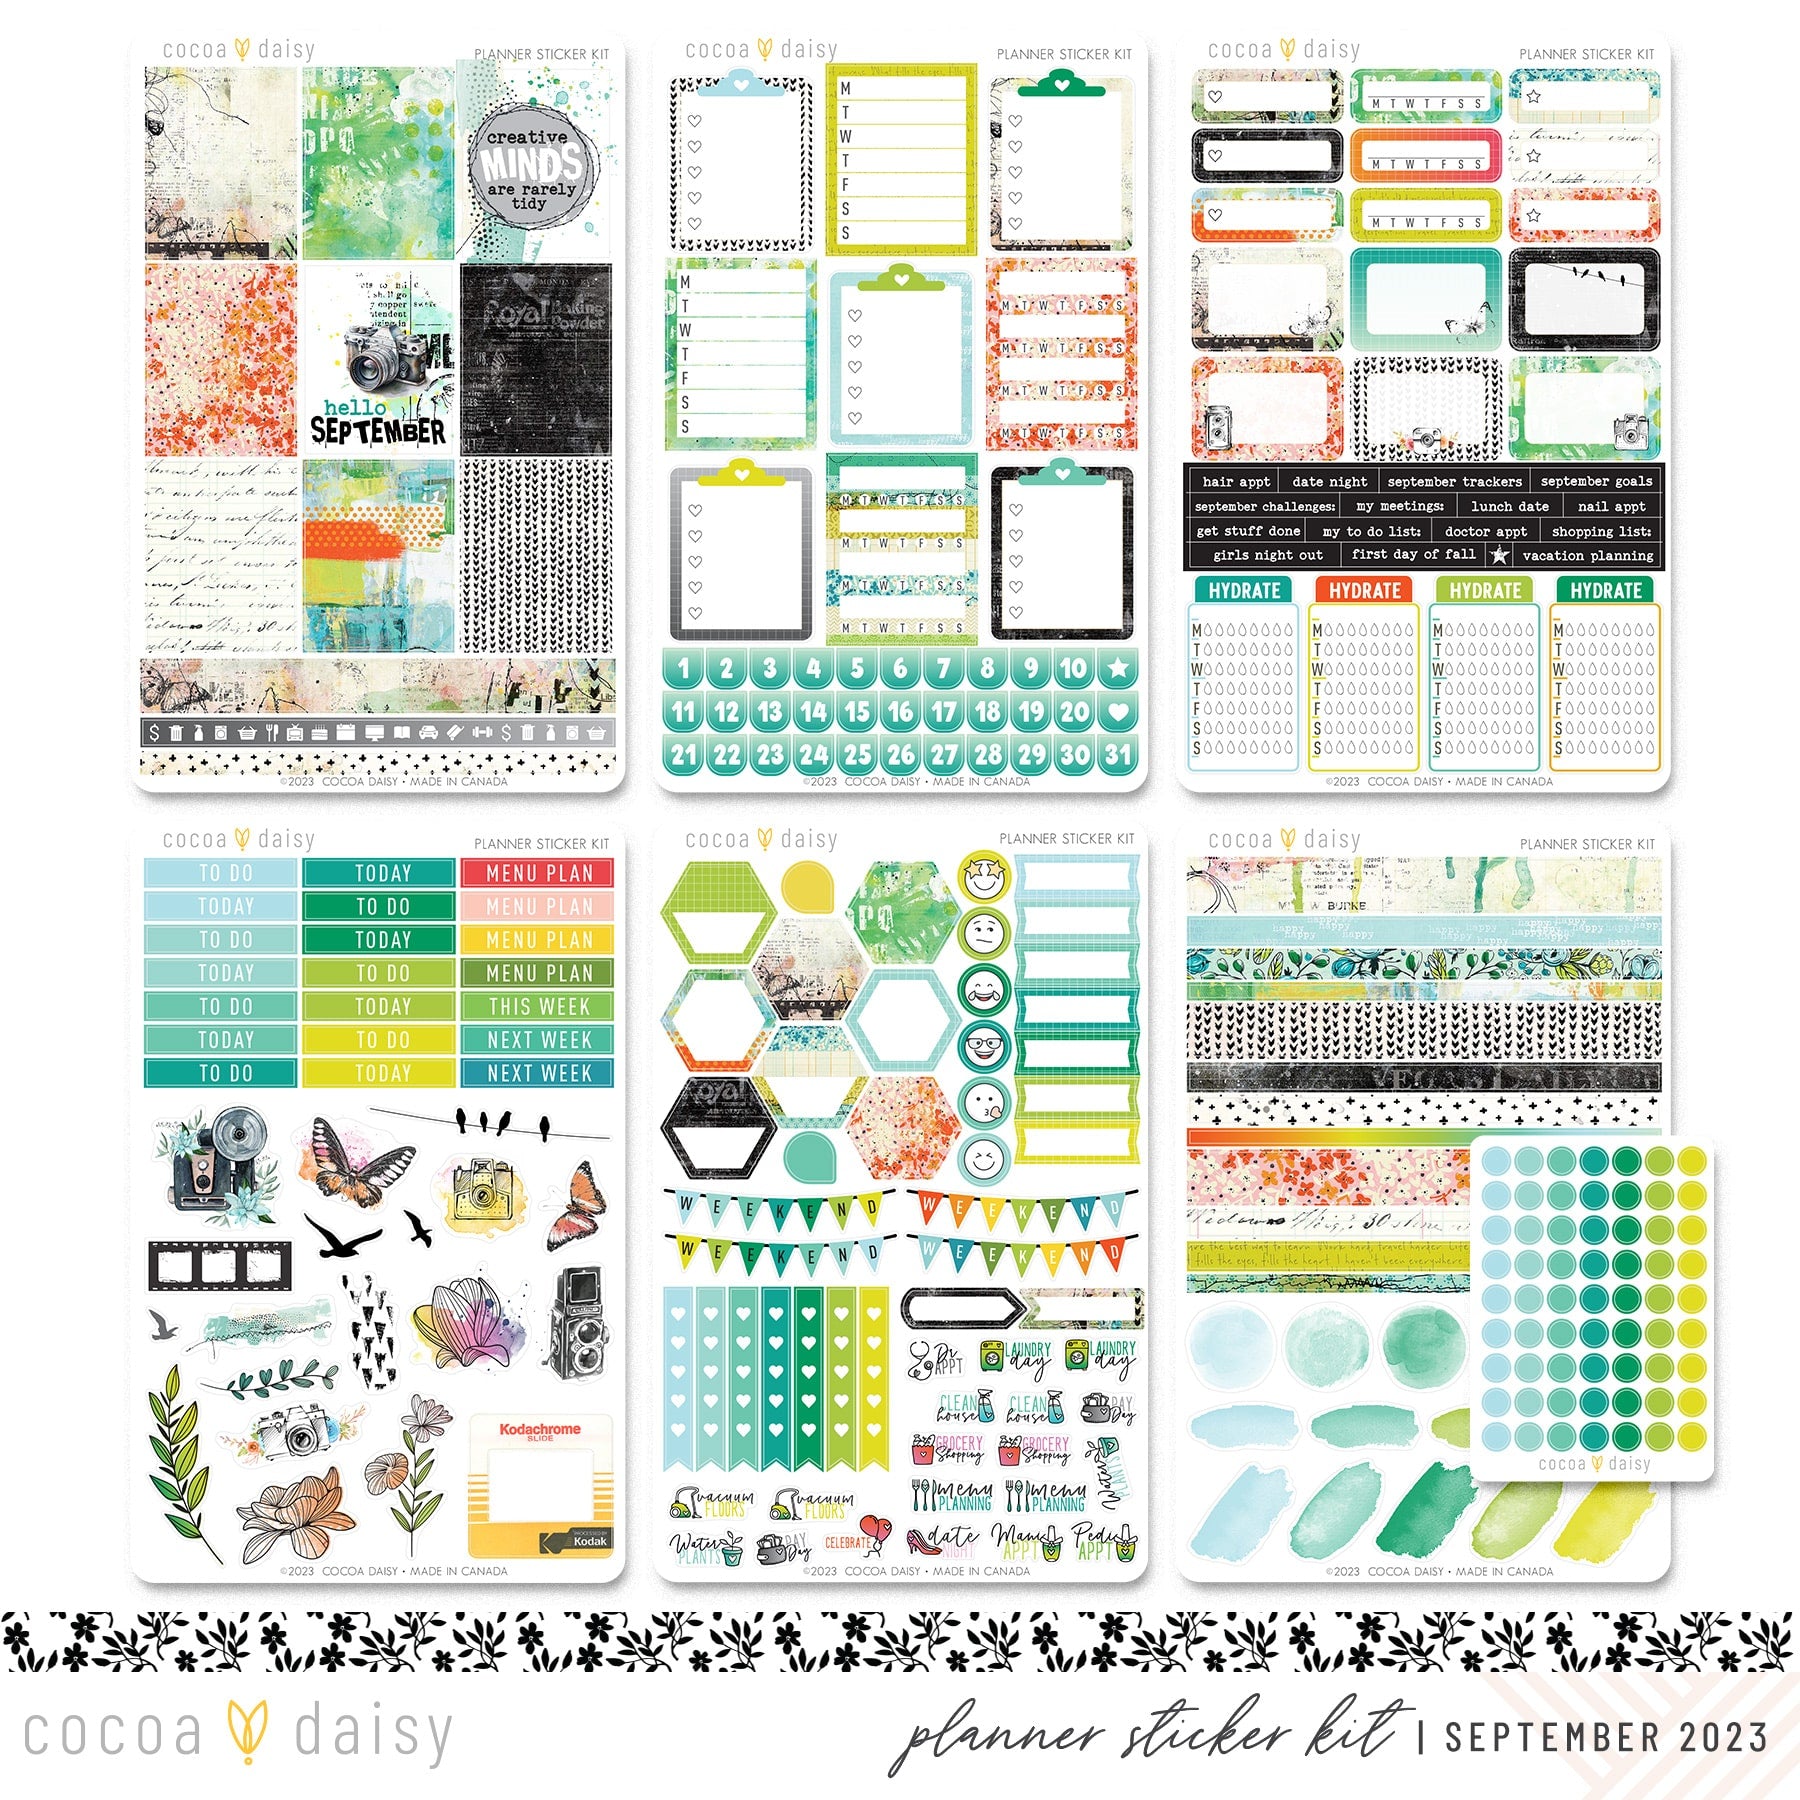 Daily Journal Planner Sticker Kit September 2023